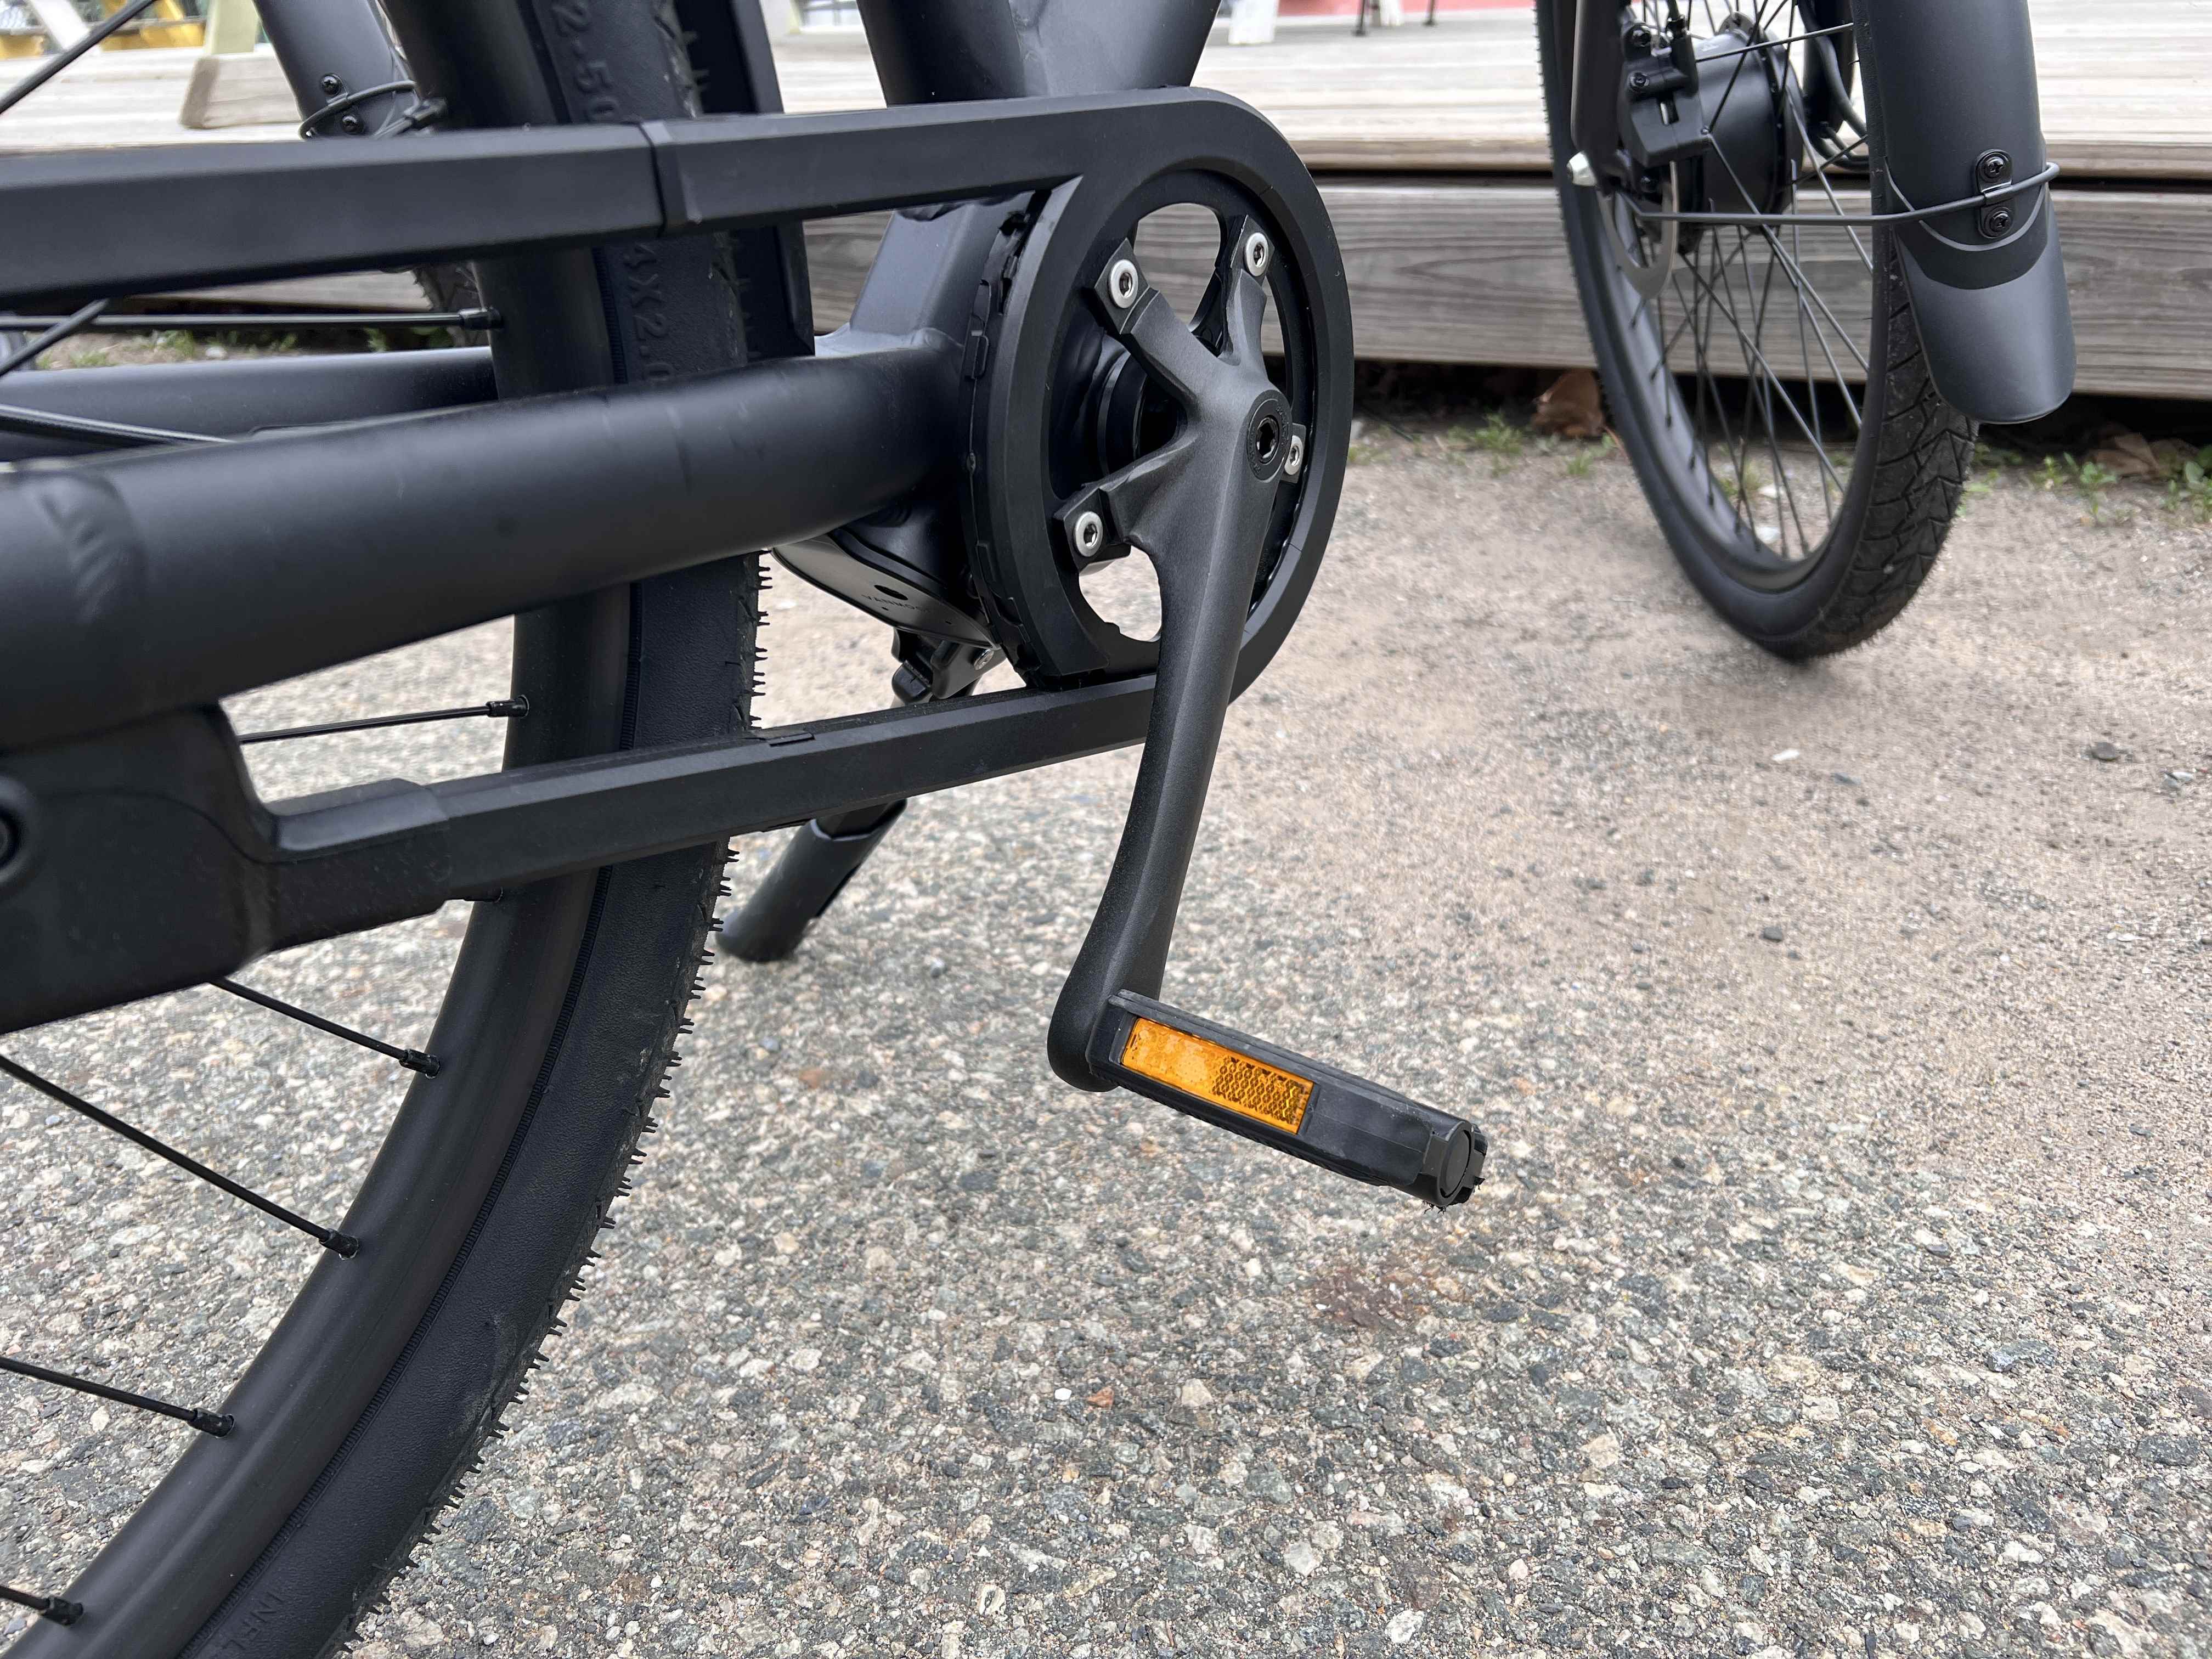 VanMoof X3 e-bisiklet pedalı